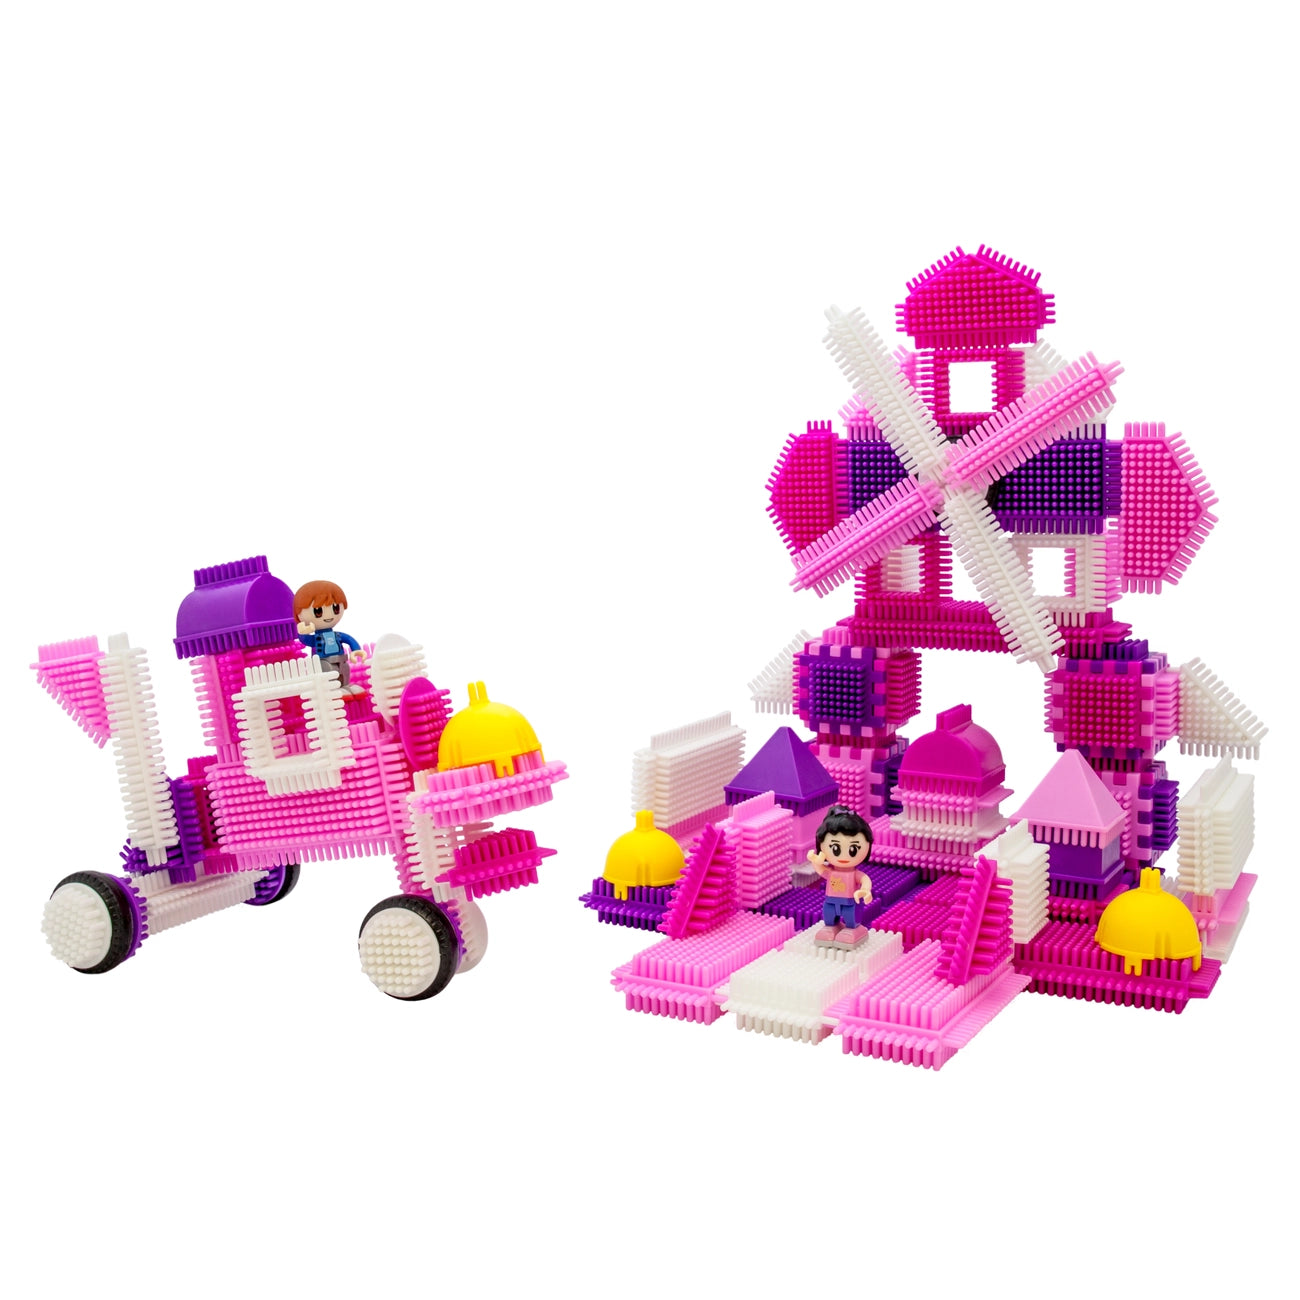 PicassoTiles 106 Piece Pink Castle Themed Bristle Blocks Set